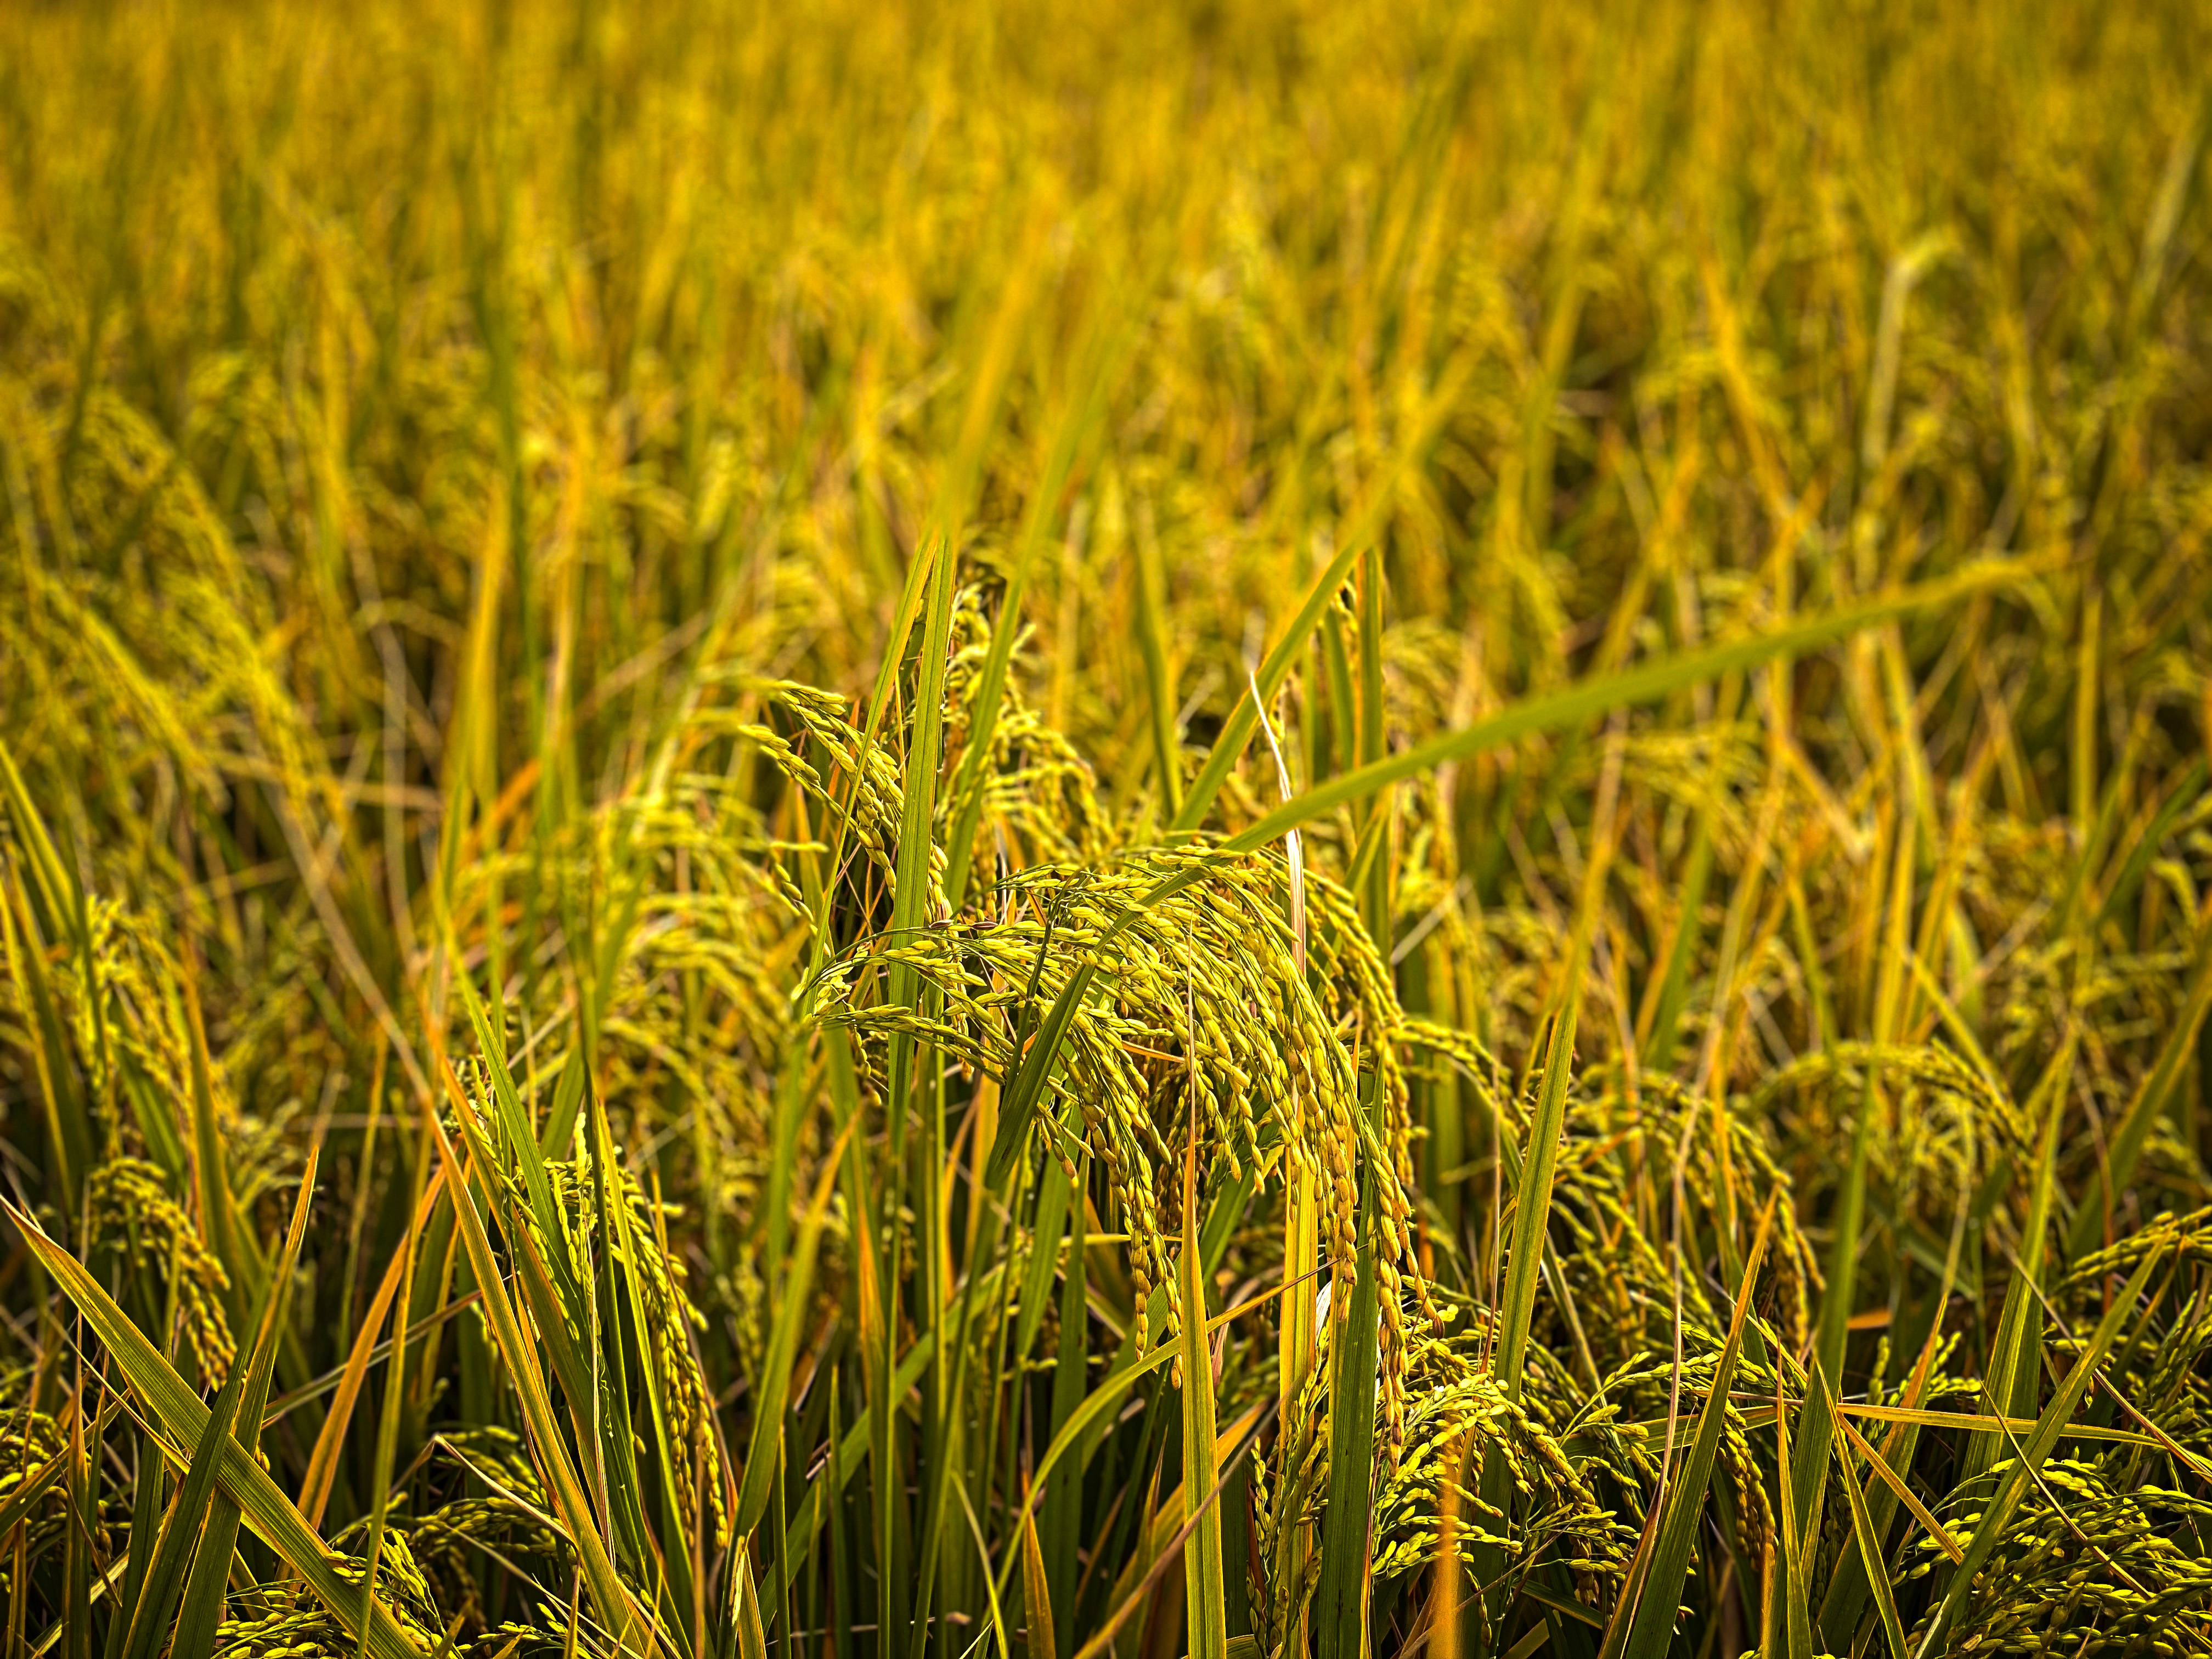 秋天收获的季节,看看硕果满满的稻田景色!